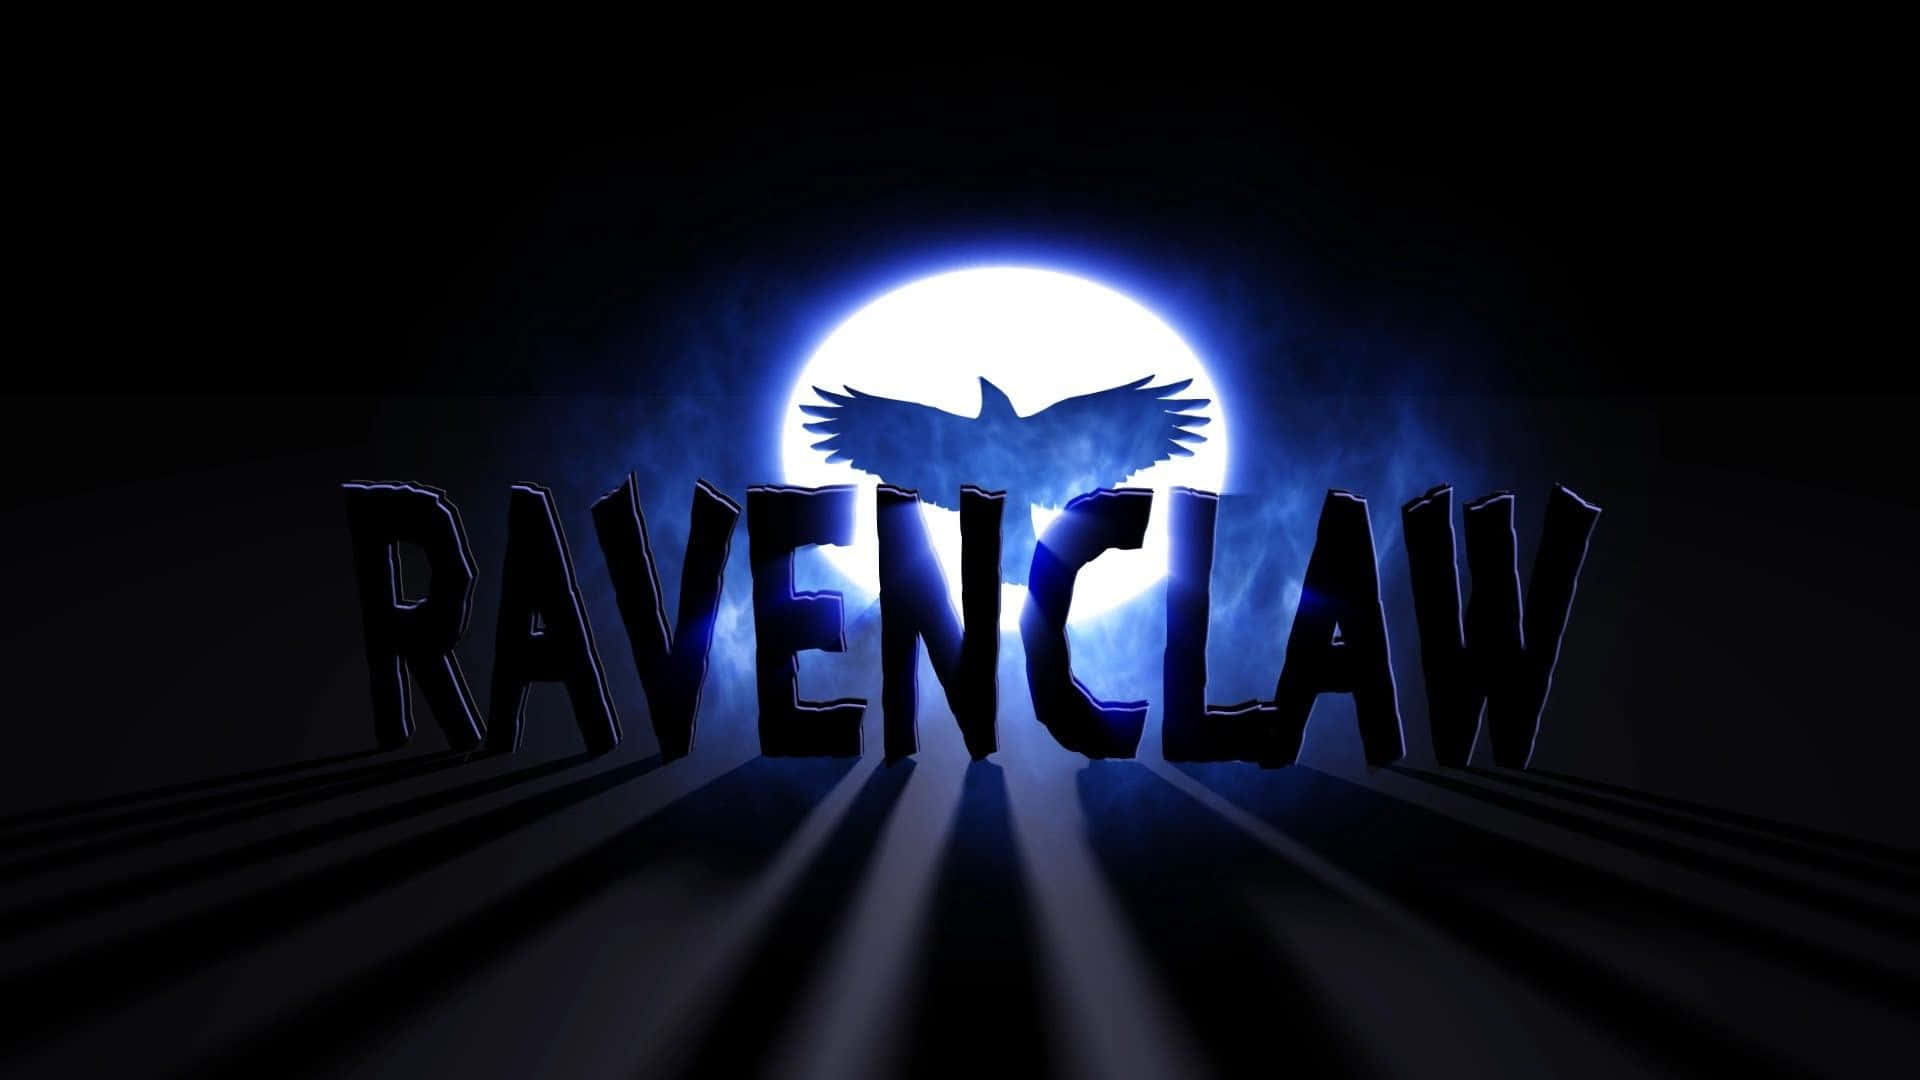 Vær stolt at repræsentere Ravenclaw i Harry Potter filmene! Wallpaper